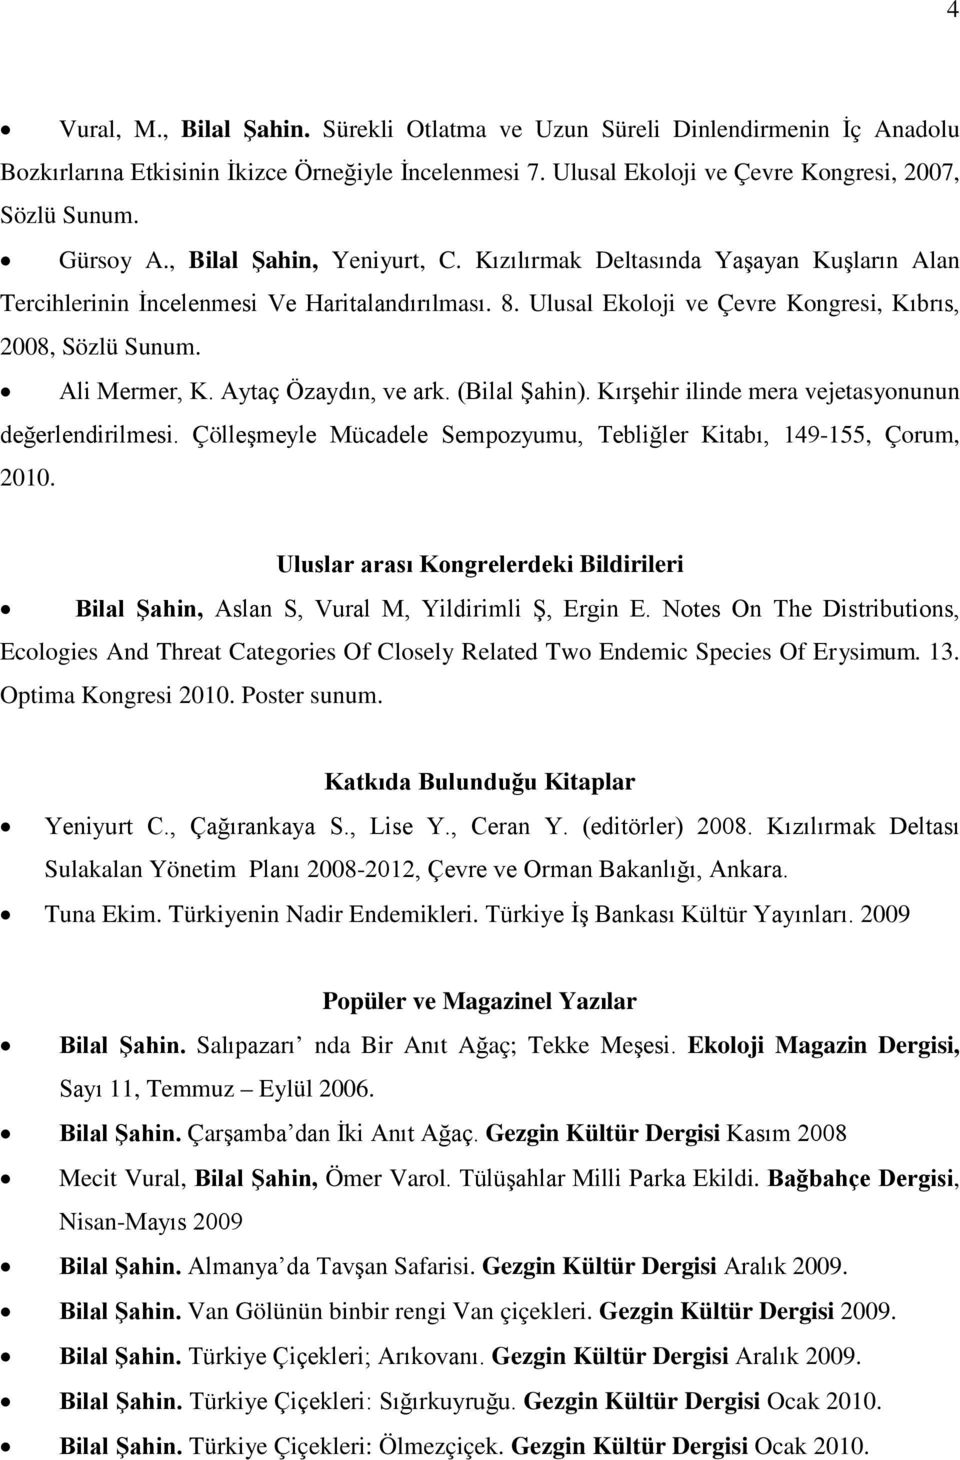 Aytaç Özaydın, ve ark. (Bilal Şahin). Kırşehir ilinde mera vejetasyonunun değerlendirilmesi. Çölleşmeyle Mücadele Sempozyumu, Tebliğler Kitabı, 149-155, Çorum, 2010.